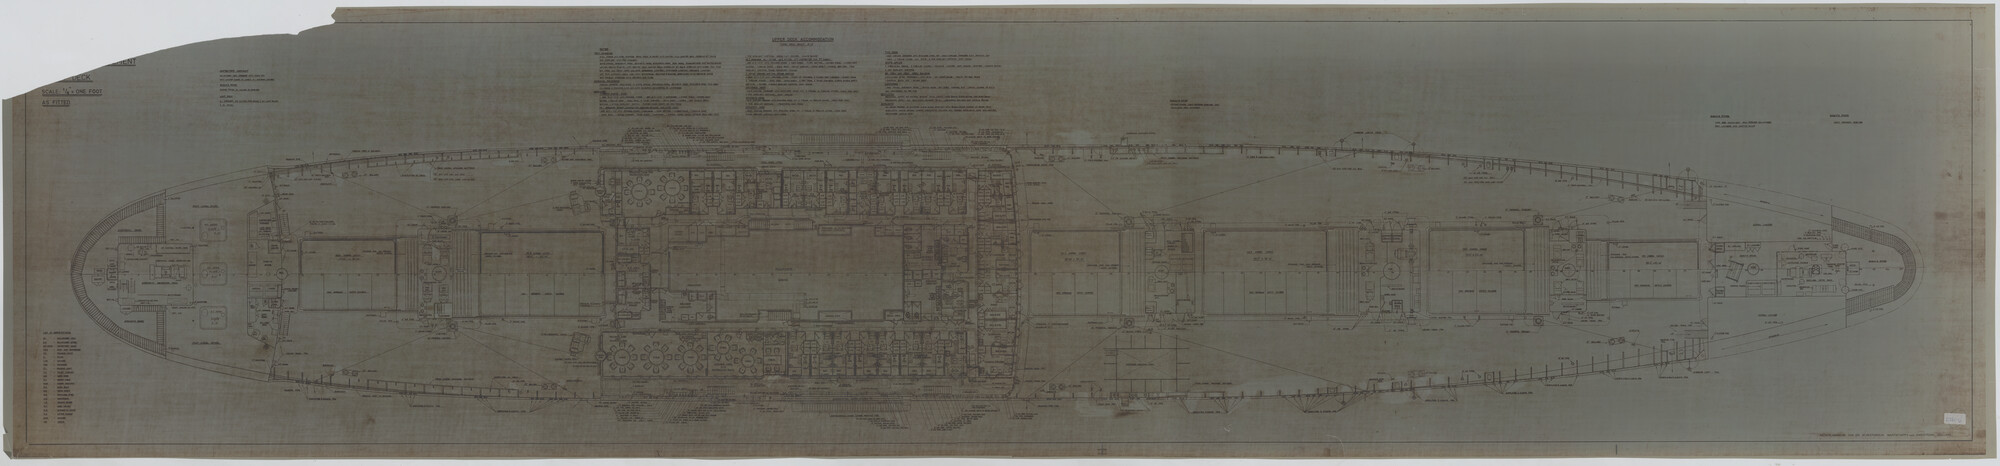 S.5444(226.04); Algemeen plan van brugdek, kampanjedek en bakdek van het vrachtschip [...]; technische tekening